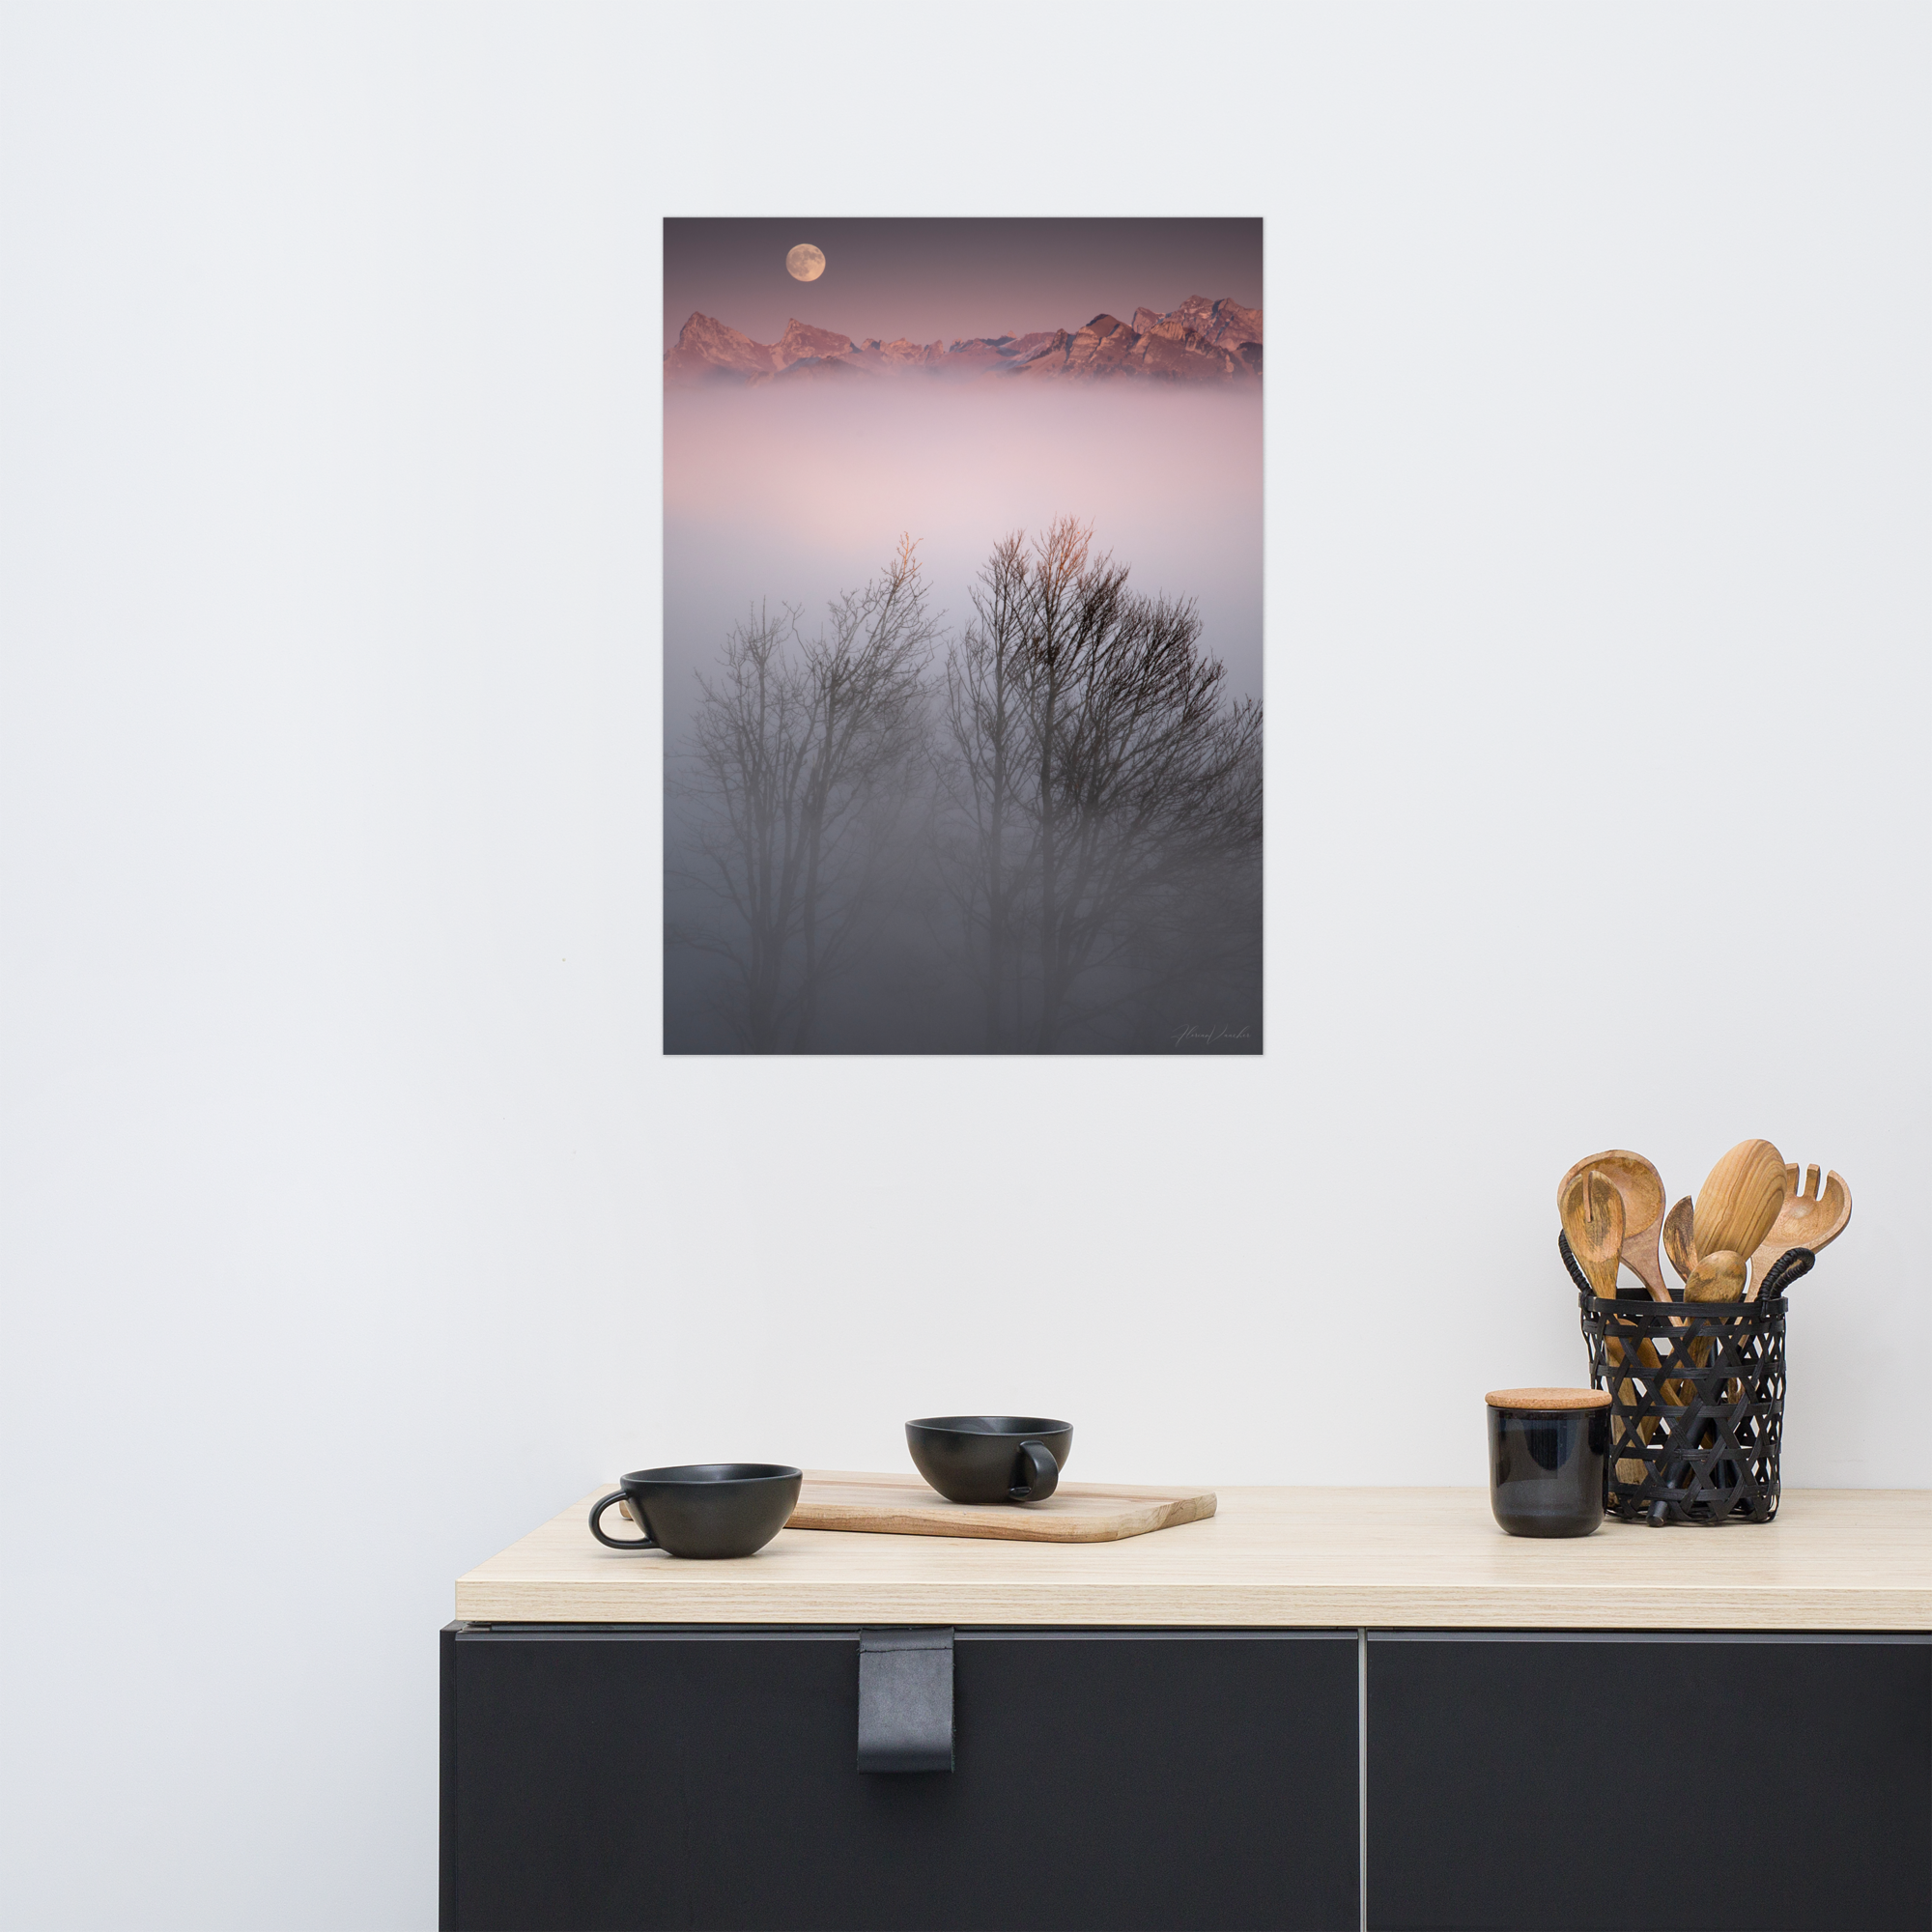 Deux arbres émergeant d'un brouillard mystique avec des montagnes lointaines et une lune radieuse en arrière-plan, une œuvre signée Florian Vaucher.